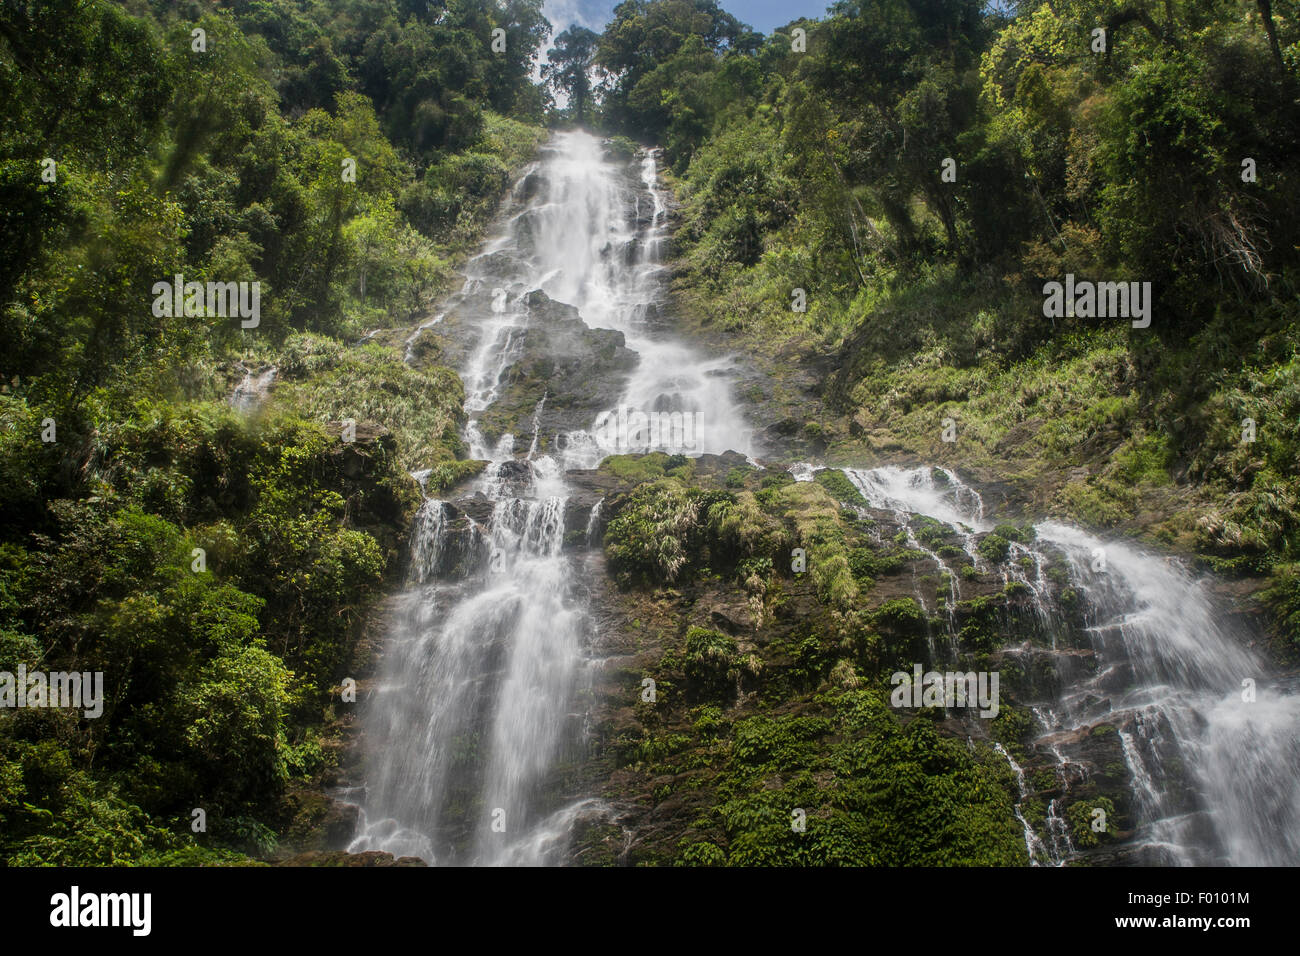 Waterfall at Poring Hot Springs, Sabah, Malaysia. Stock Photo